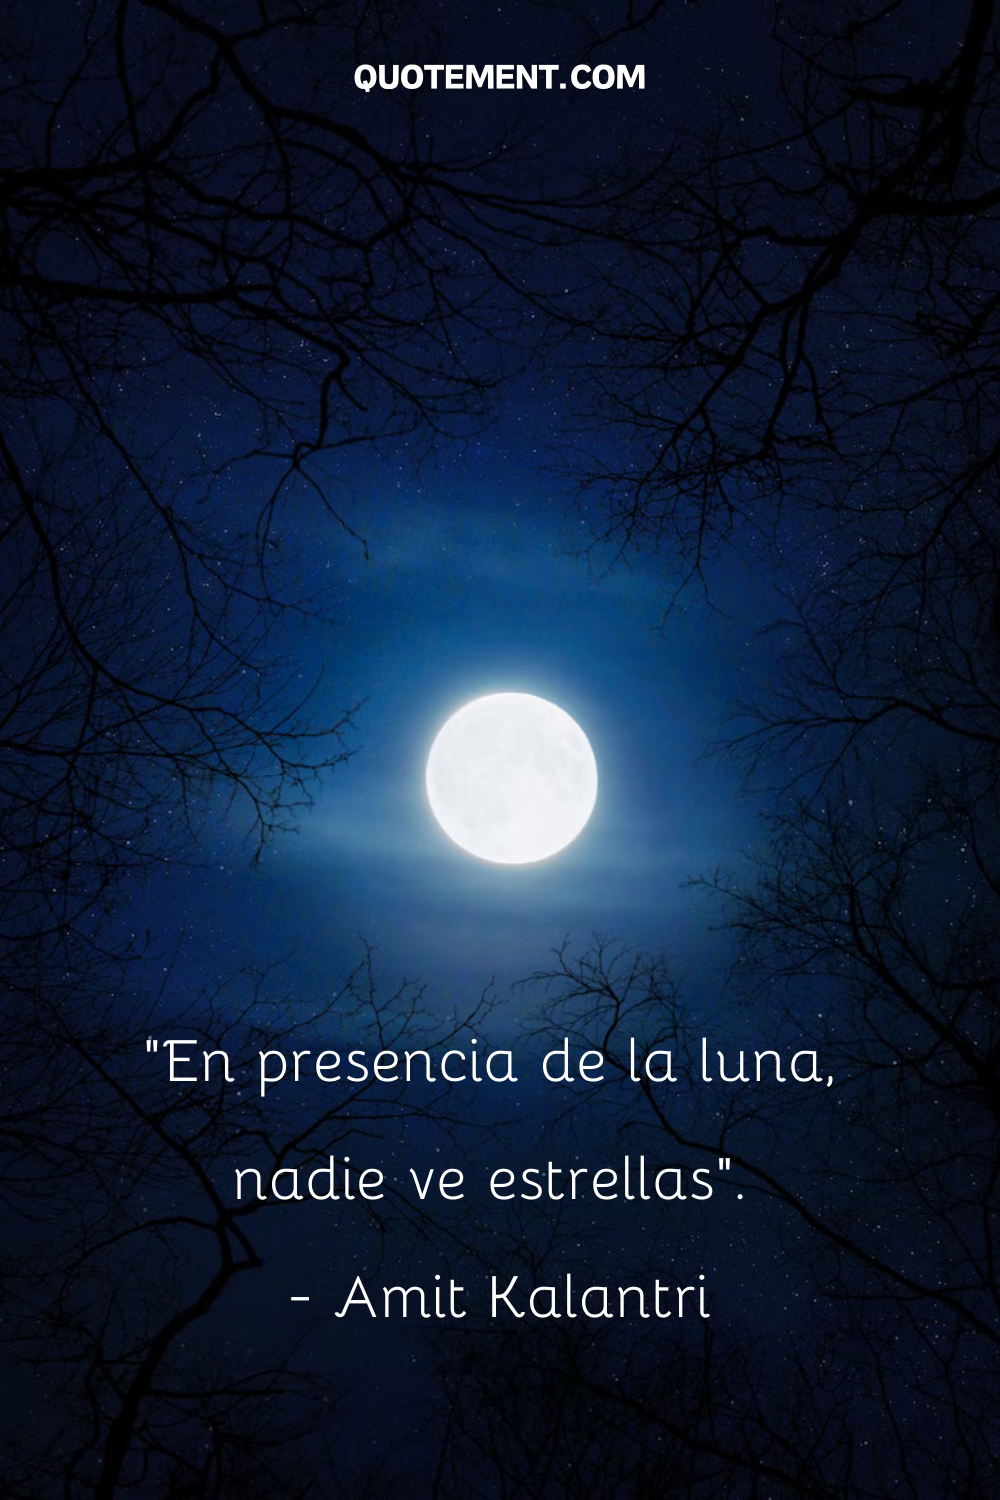 "En presencia de la luna, nadie ve las estrellas". - Amit Kalantri